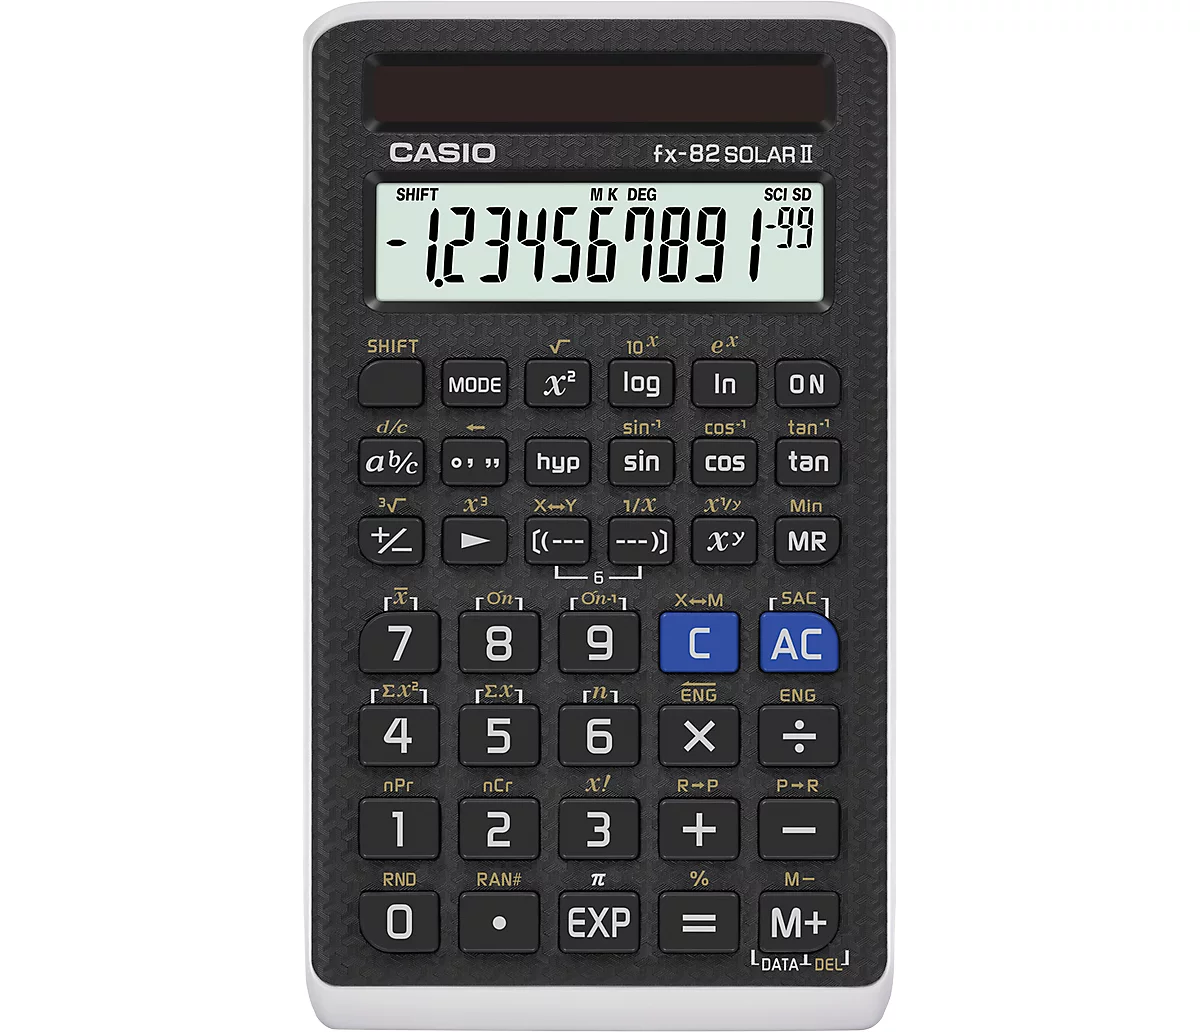 Achetez Casio FX82ES Plus Une 2e Calculatrice Scientifique Standard  Supplies de Bureau Scolaire Portables Pour le Collège du Lycée - Blanche de  Chine